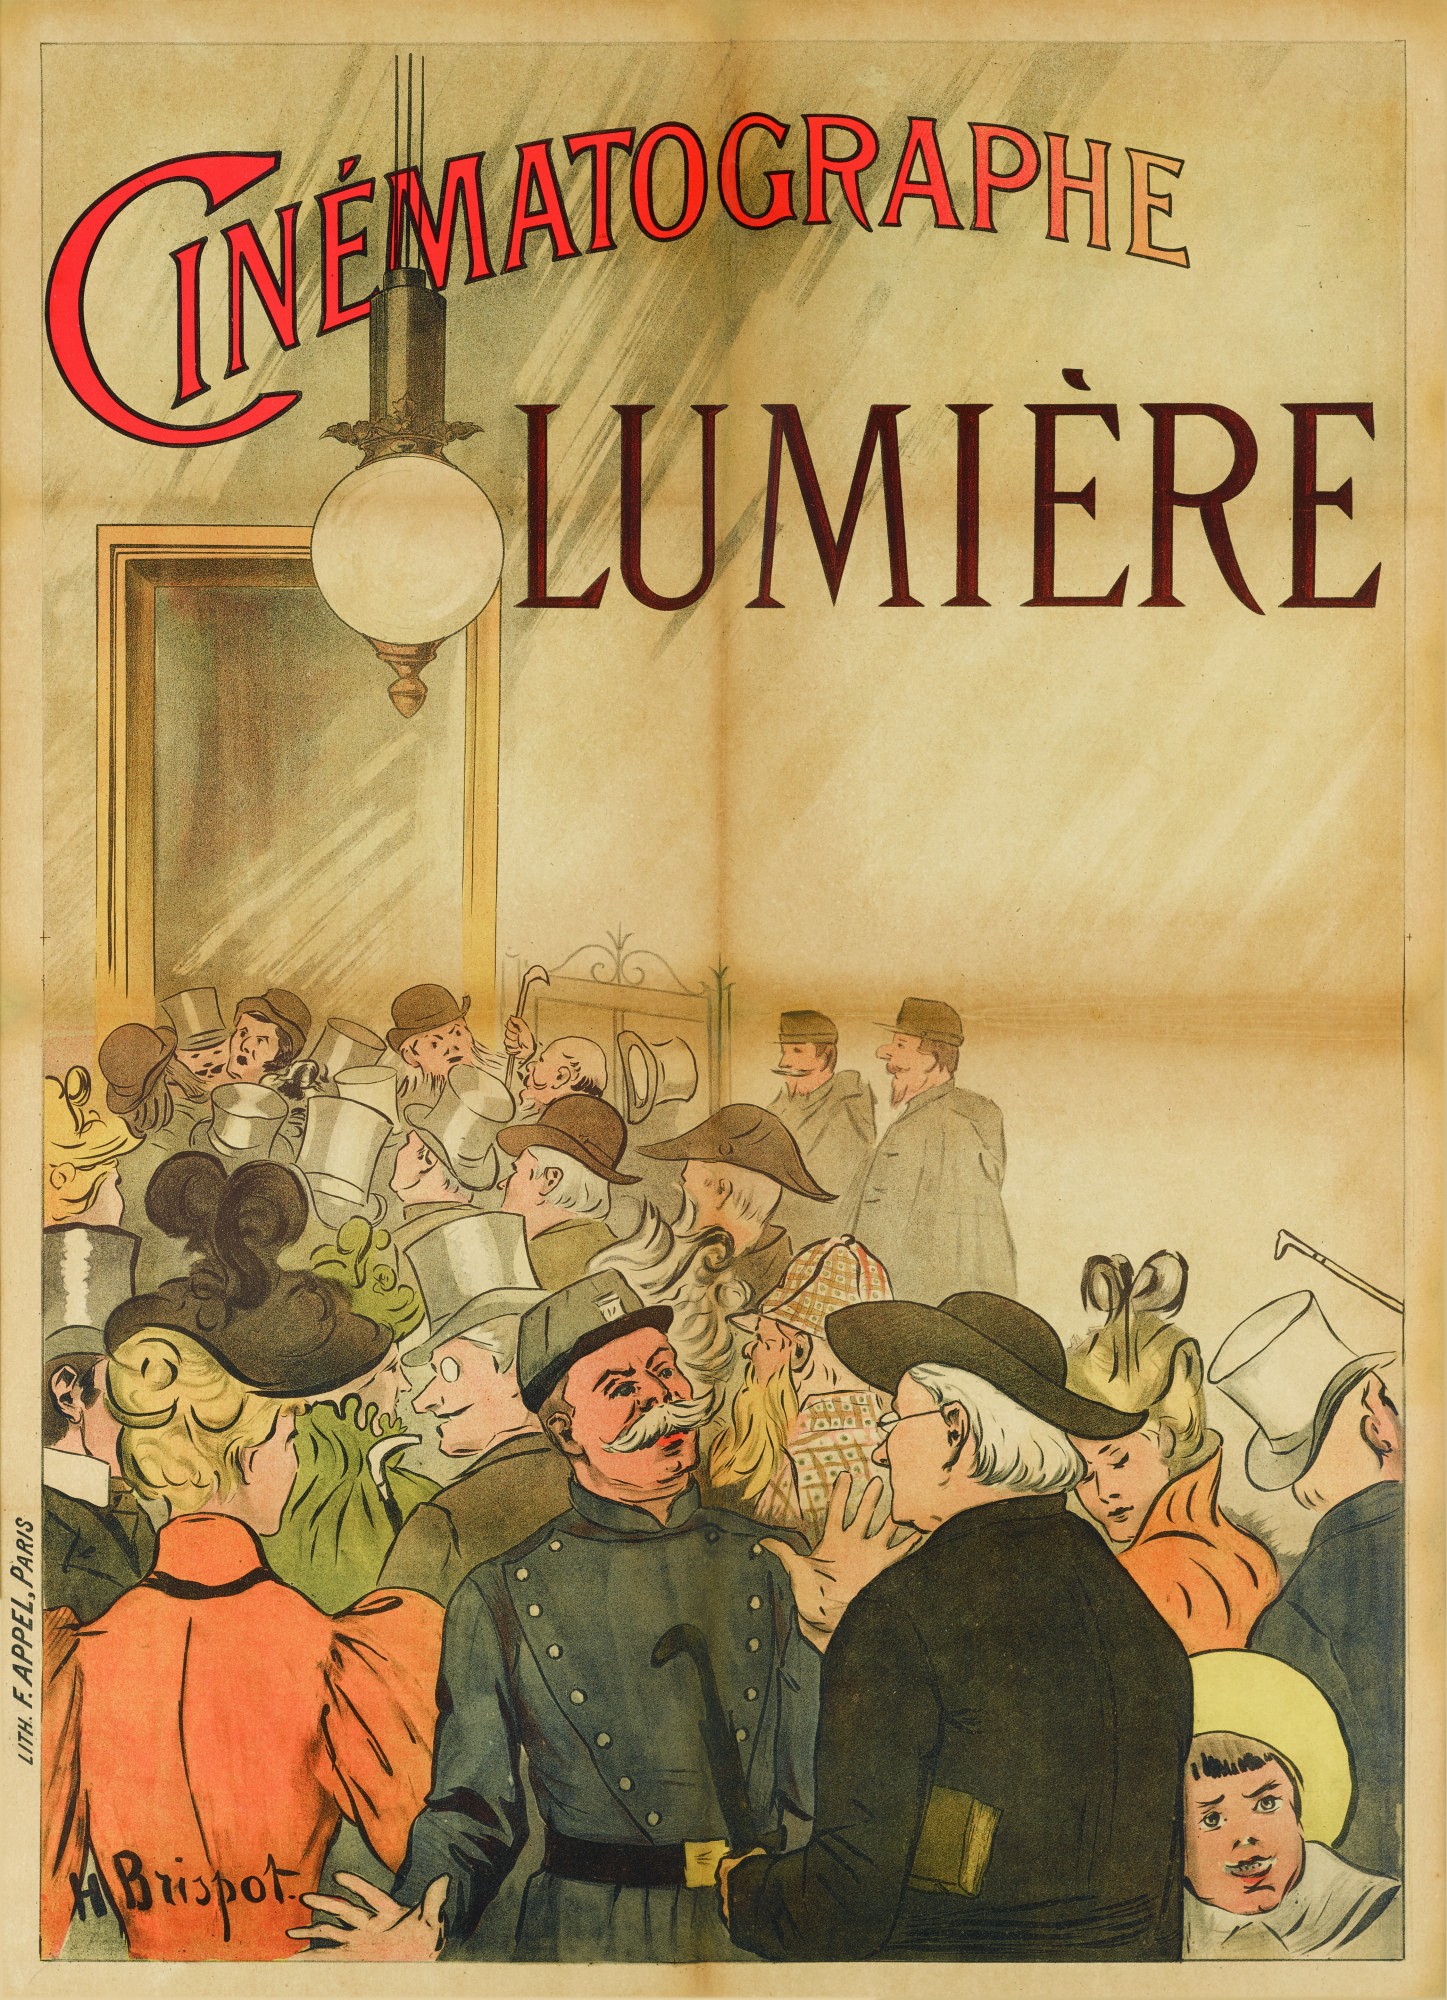 Синематограф братьев Люмьер (1896), художник Анри Бриспо